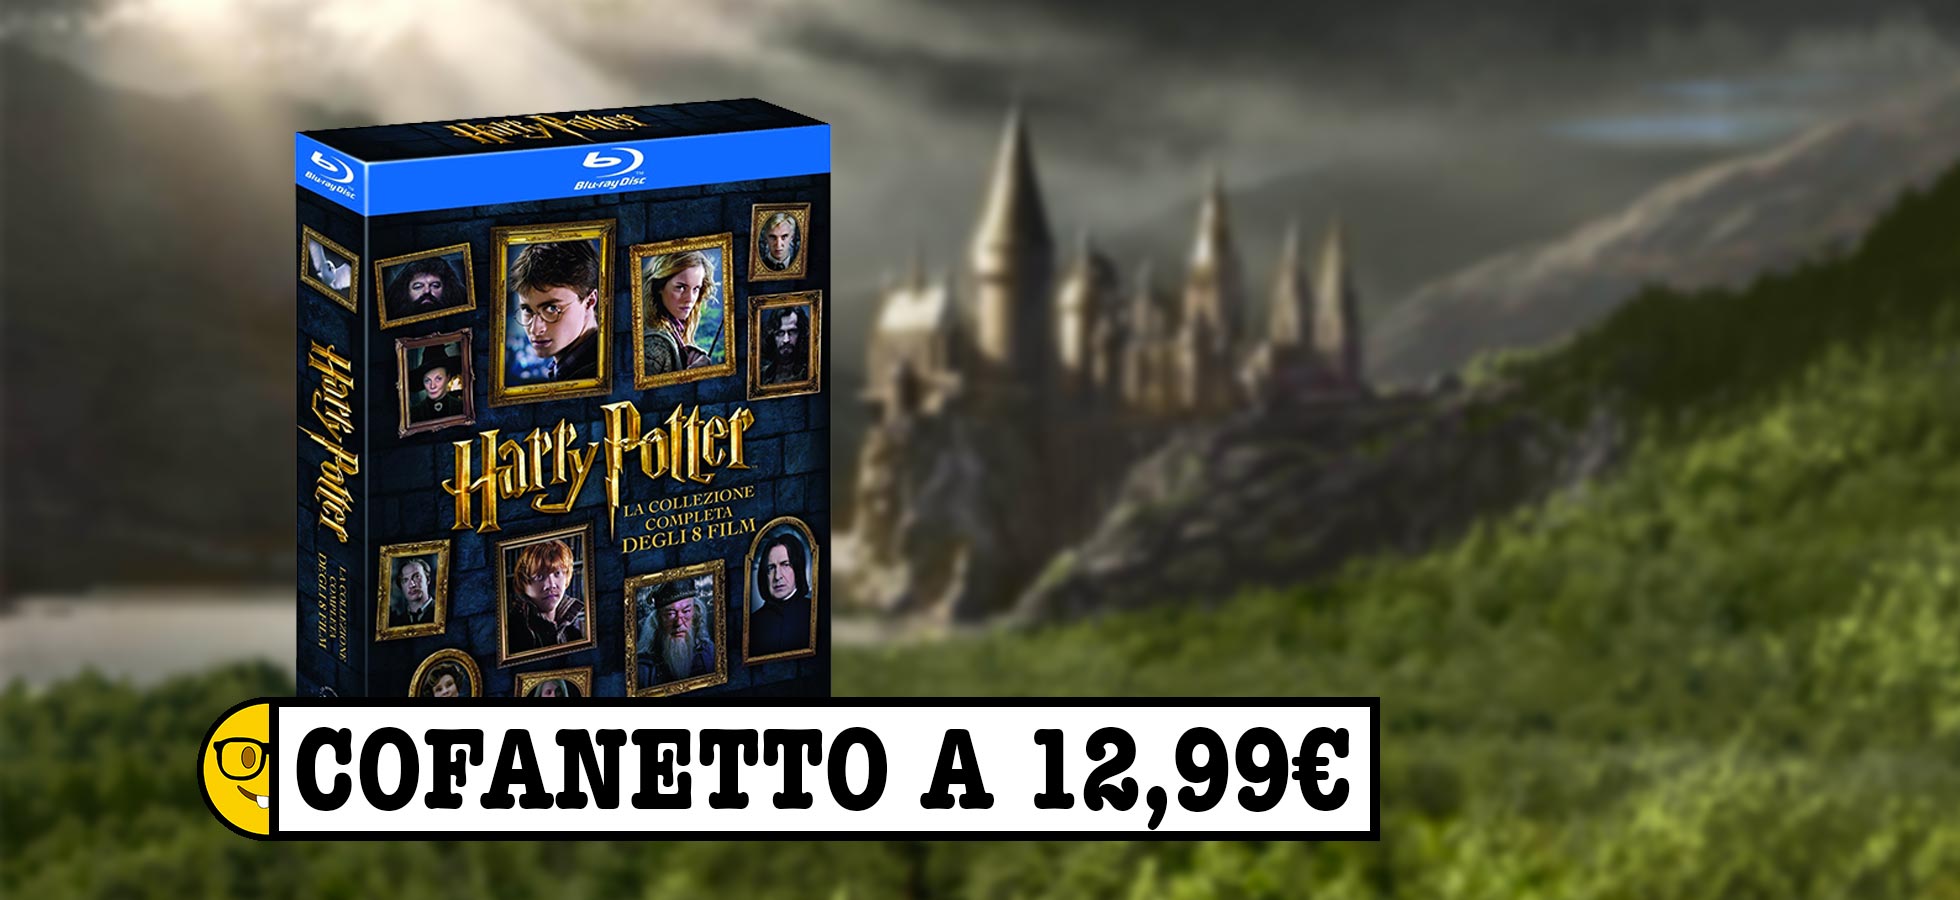 Promozione Harry Potter: il cofanetto a soli 12,99€ - Affari da Nerd